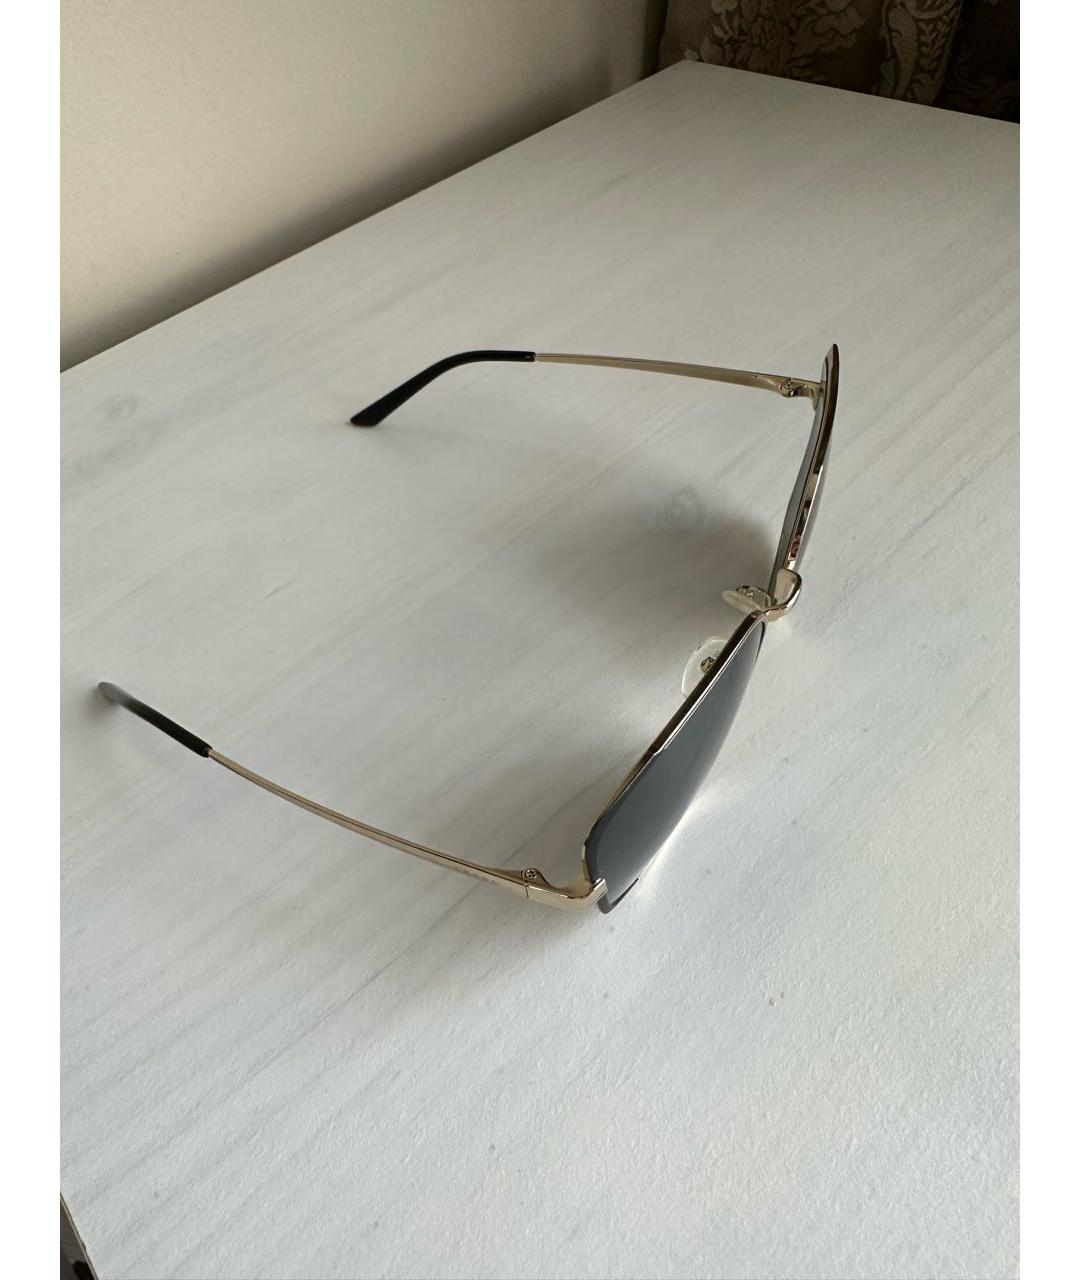 PRADA Черные металлические солнцезащитные очки, фото 2